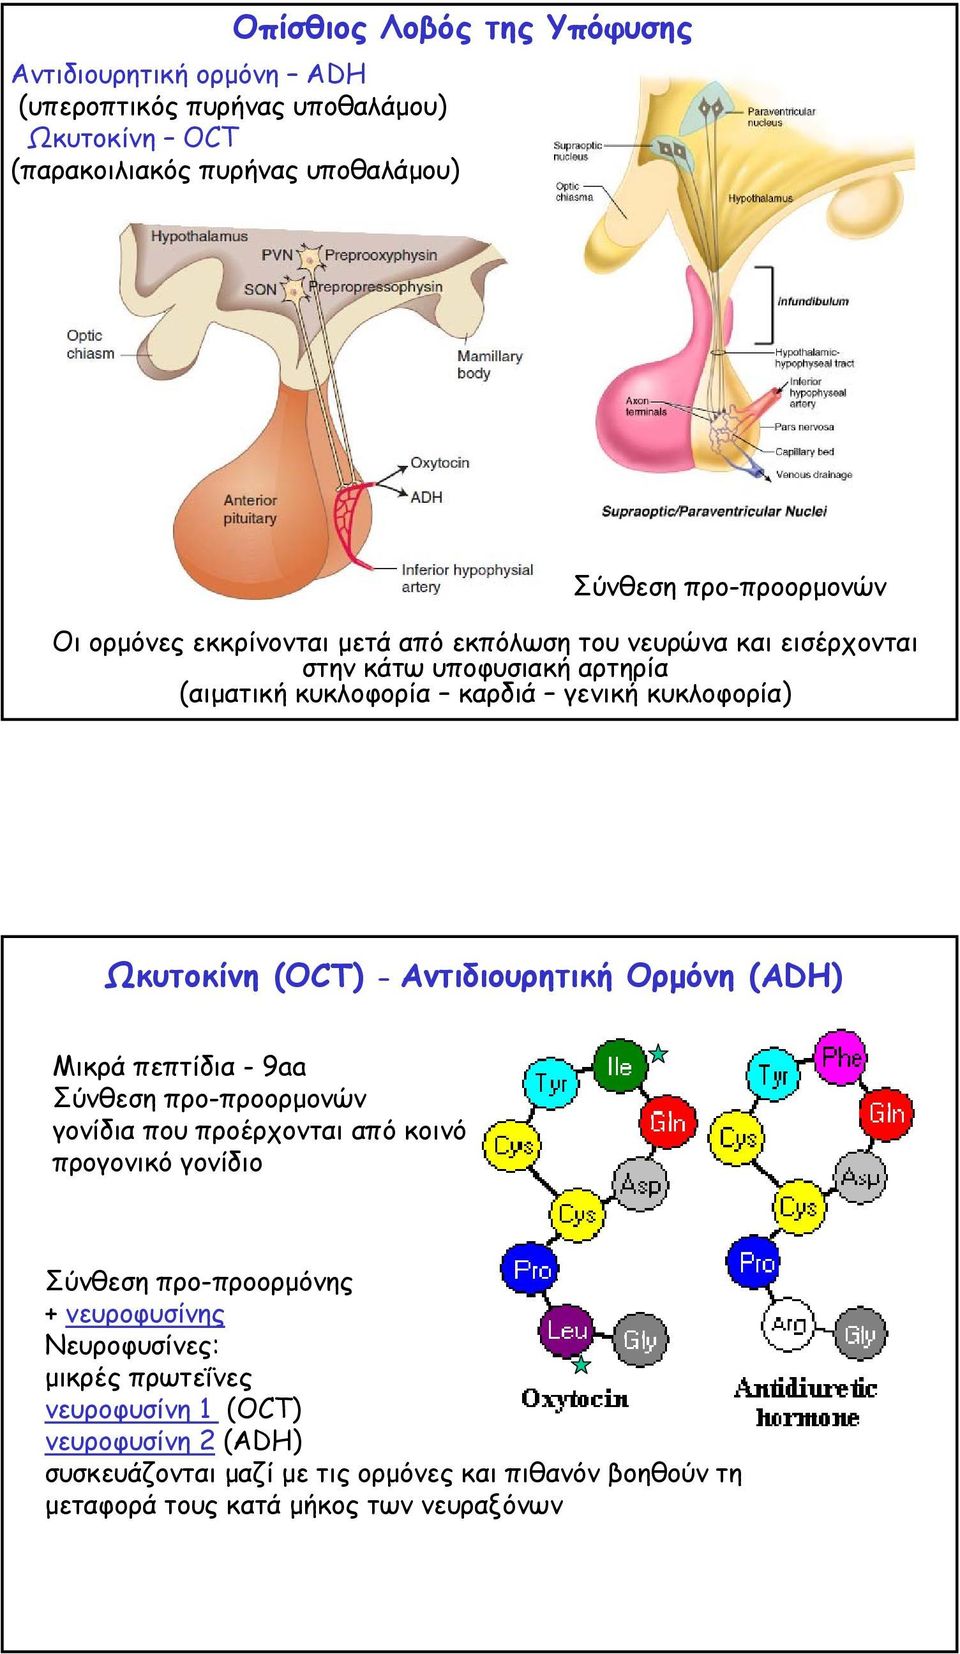 Αντιδιουρητική Ορµόνη (ADH) Μικρά πεπτίδια -9aa Σύνθεση προ-προορµονών γονίδια που προέρχονται από κοινό προγονικό γονίδιο Σύνθεση προ-προορµόνης + νευροφυσίνης